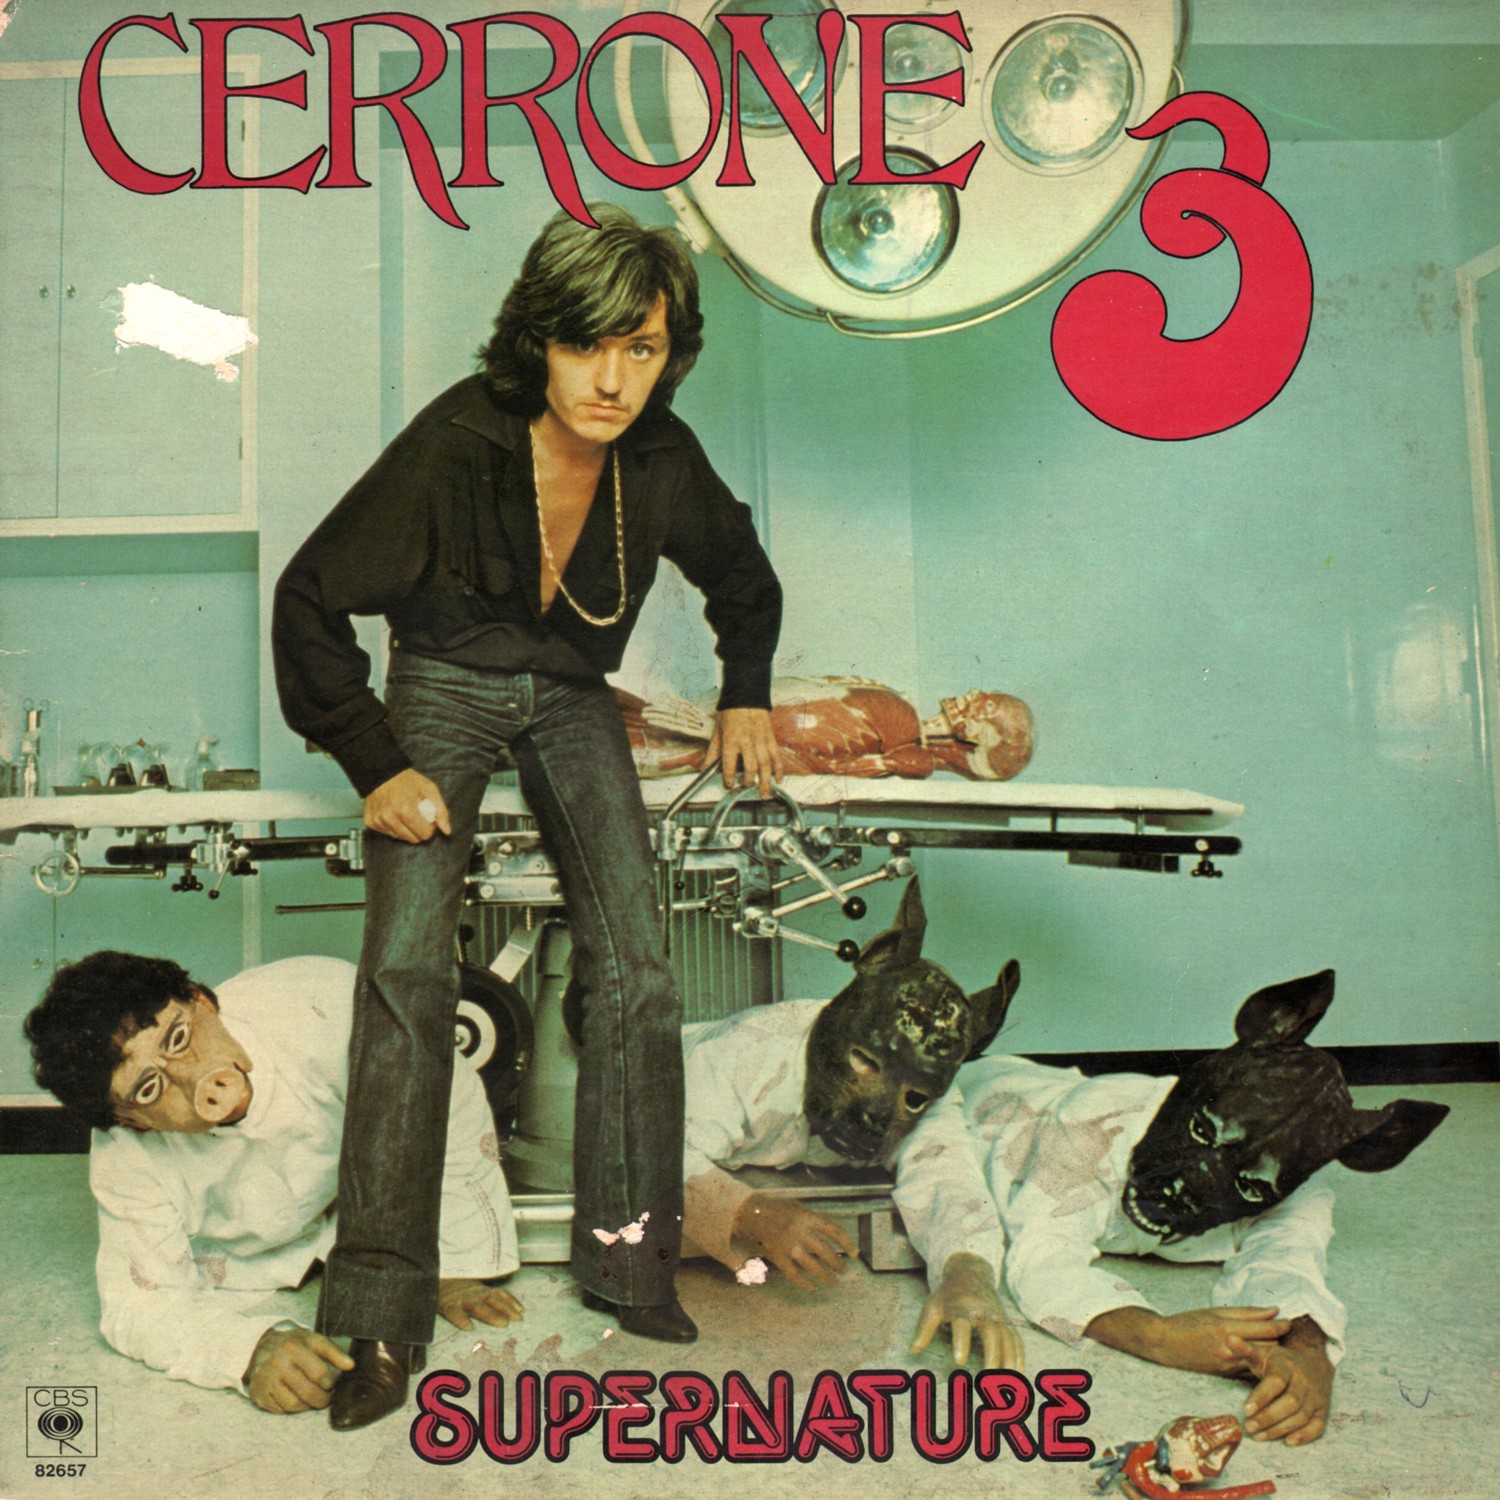 Cerrone Cerrone III cover artwork